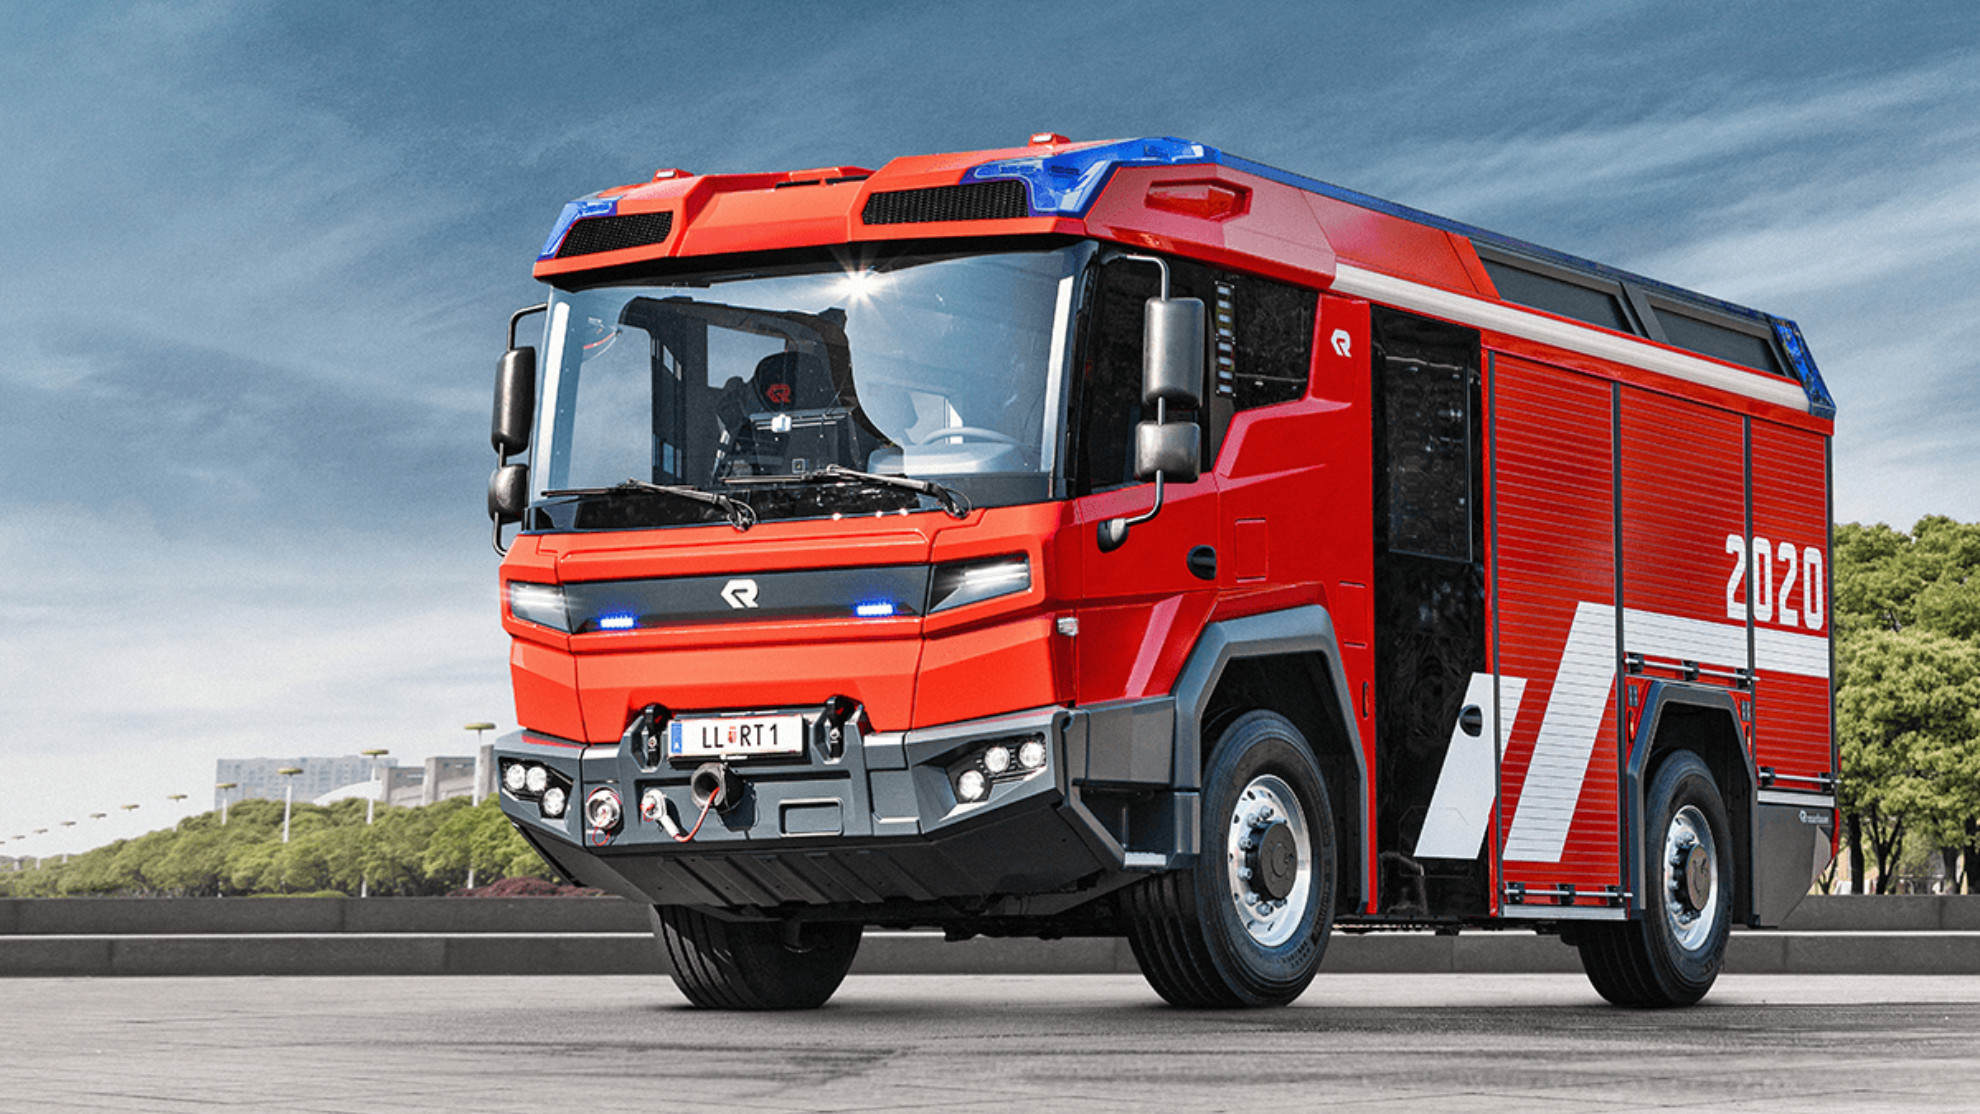 Revolutionary Technology - Camion de bomberos electrico